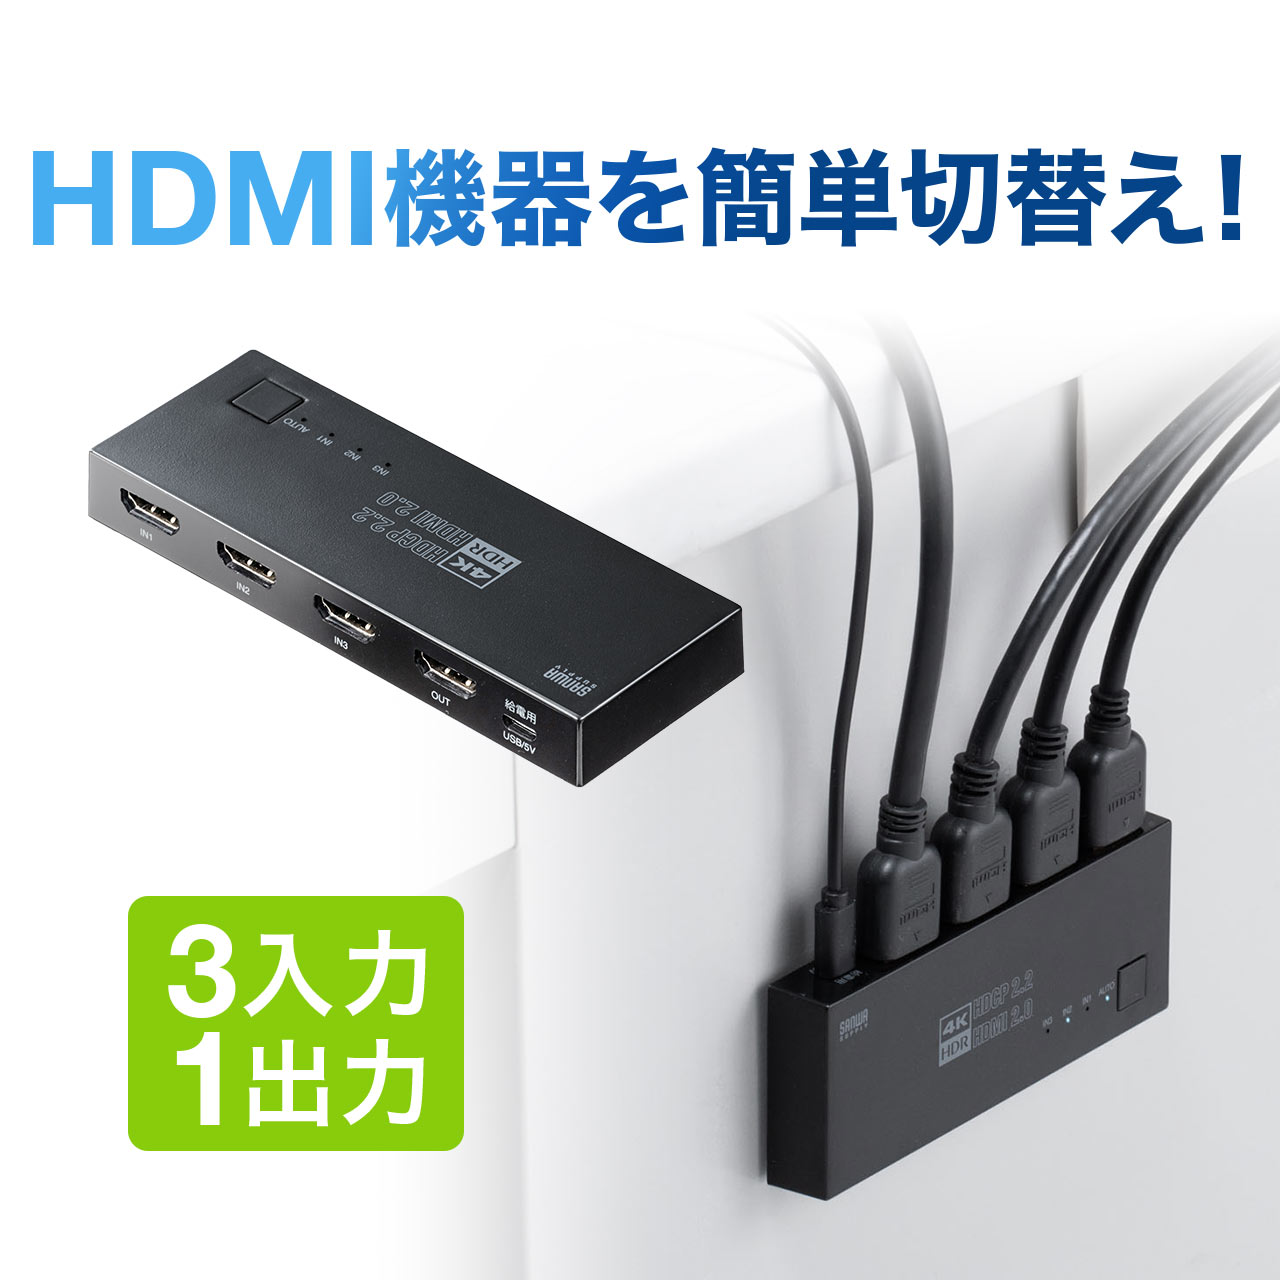 400-SW035 サンワダイレクト限定品 送料無料 HDMI 切替器 4K 60Hz 5％OFF 超特価 HDR マグネットシート付 セレクター 3入力1出力 HDCP2.2 パソコン 手動切り替え 自動